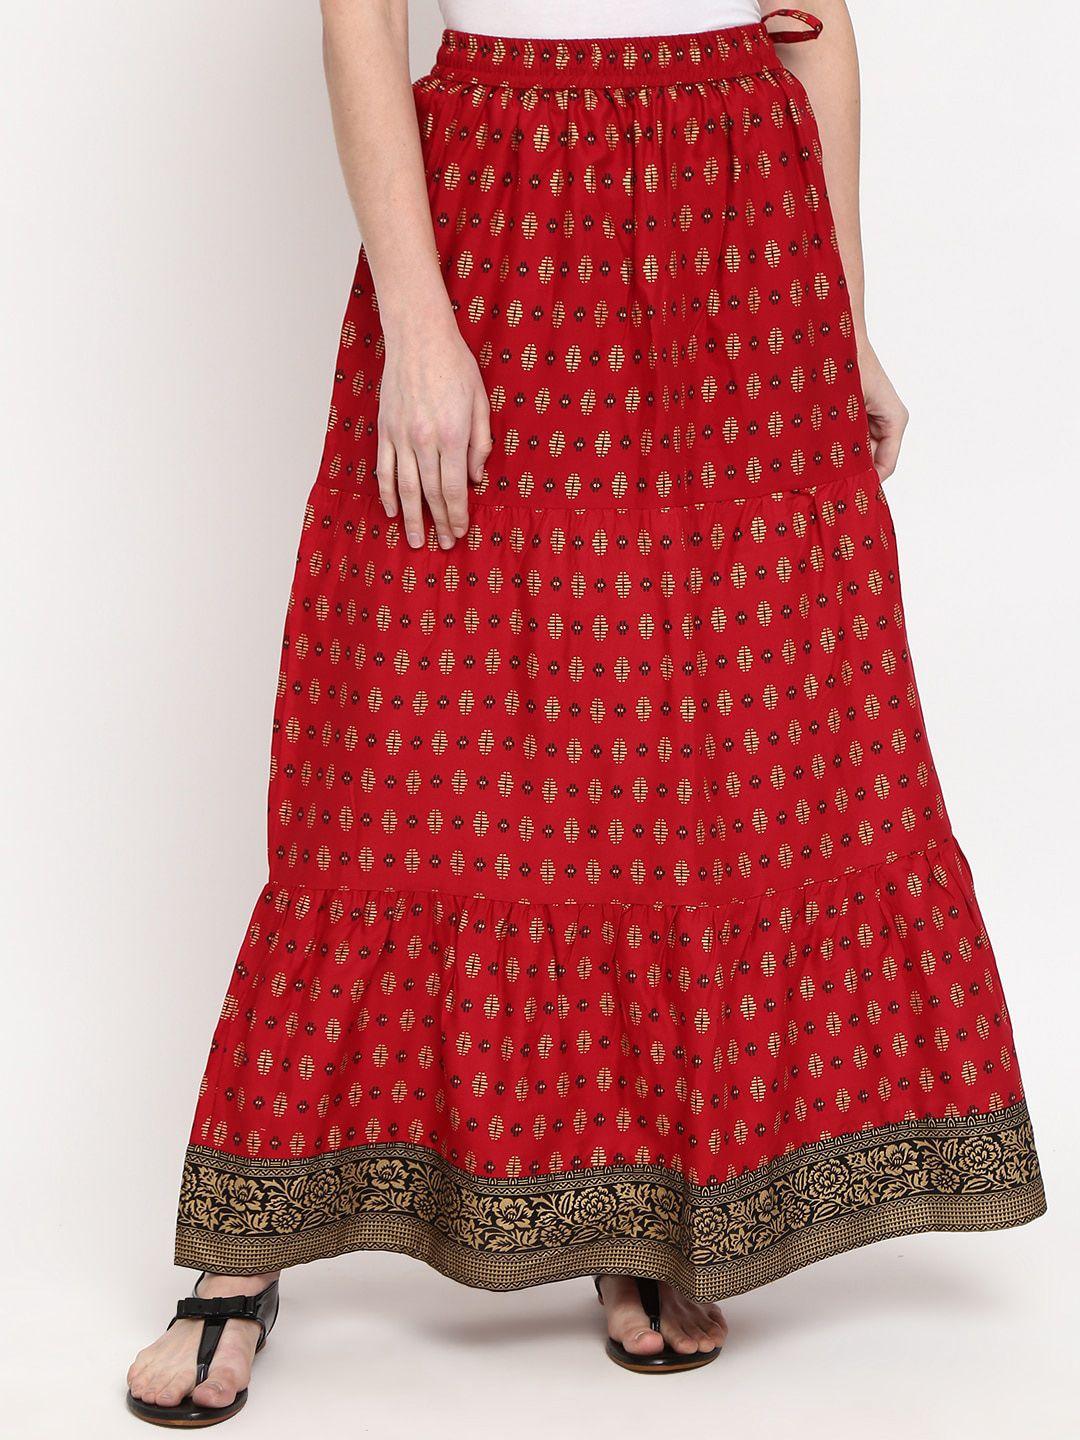 v-mart women maroon ethnic motifs printed long skirt